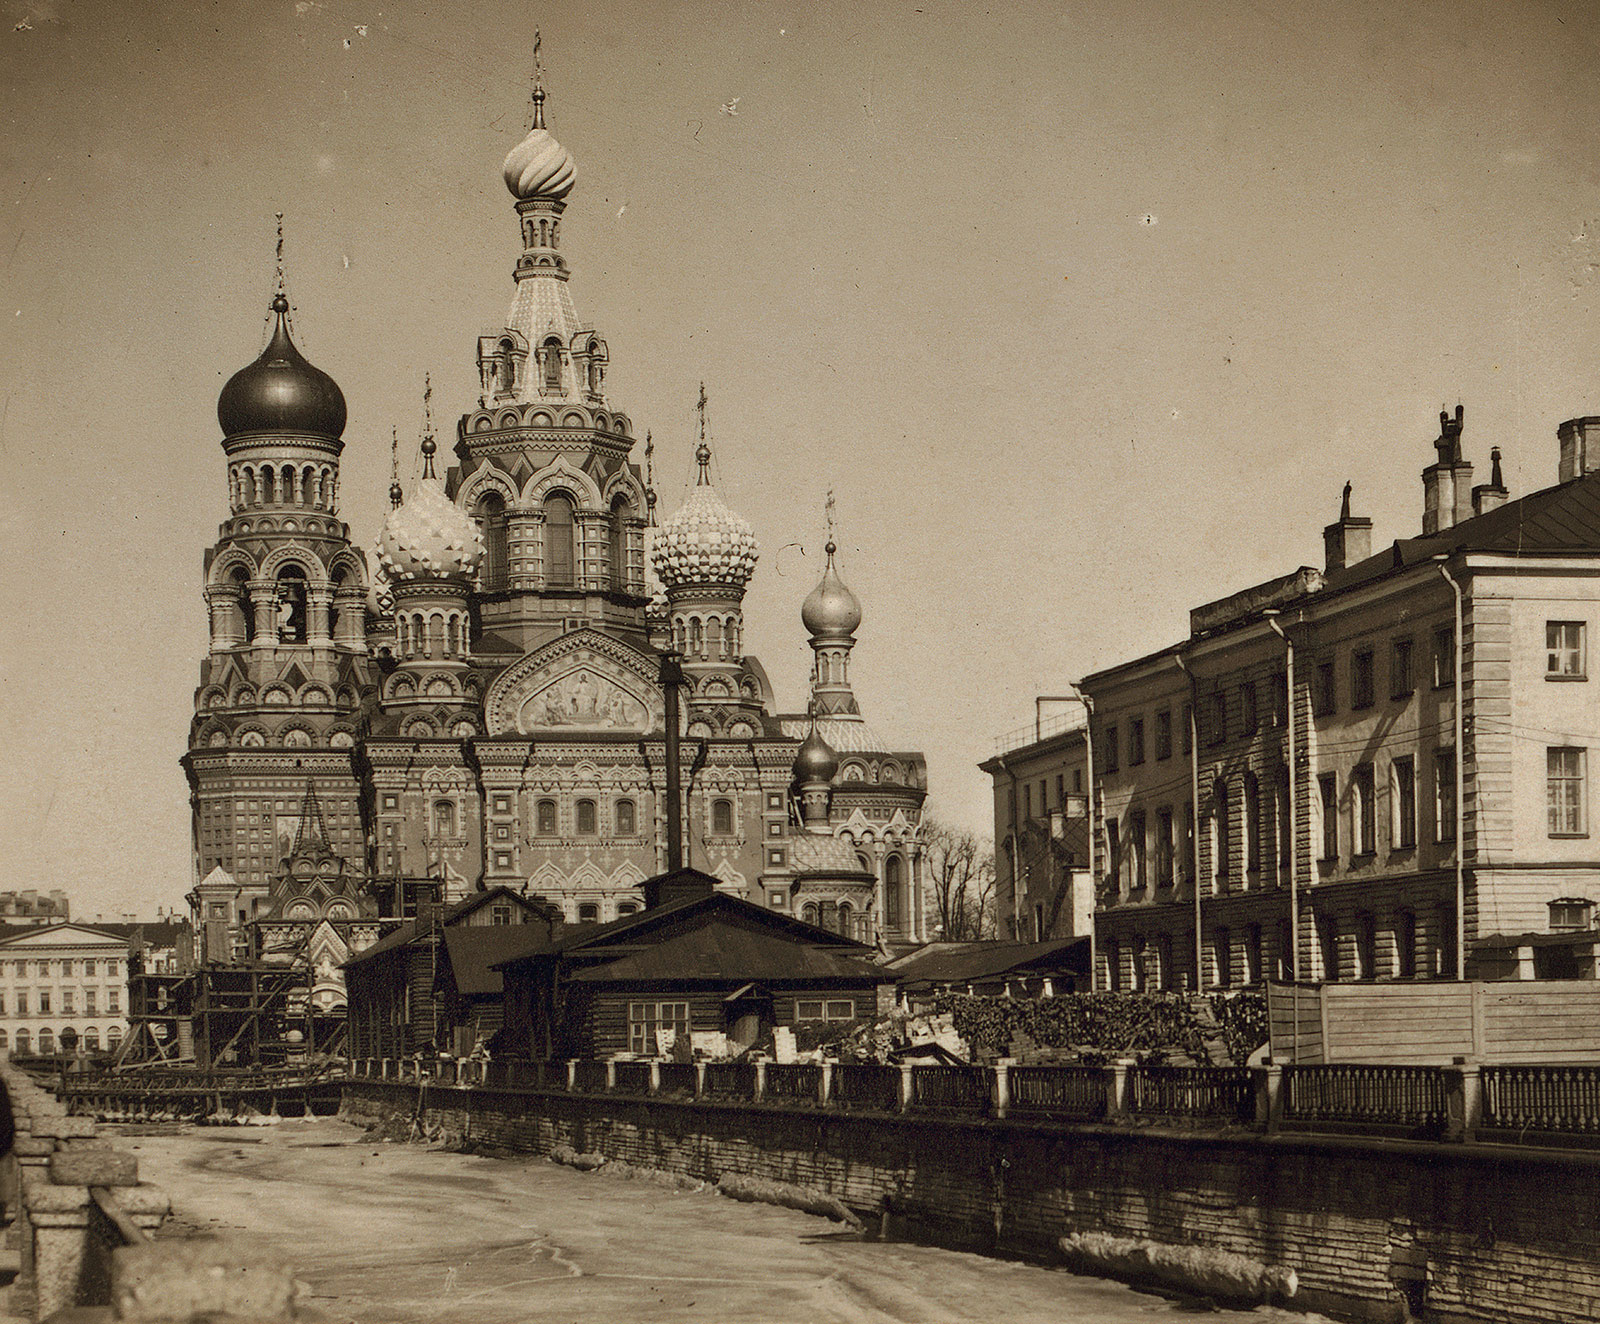 Храма Спаса на Крови, 1900-1905 г. в Санкт-Петербурге